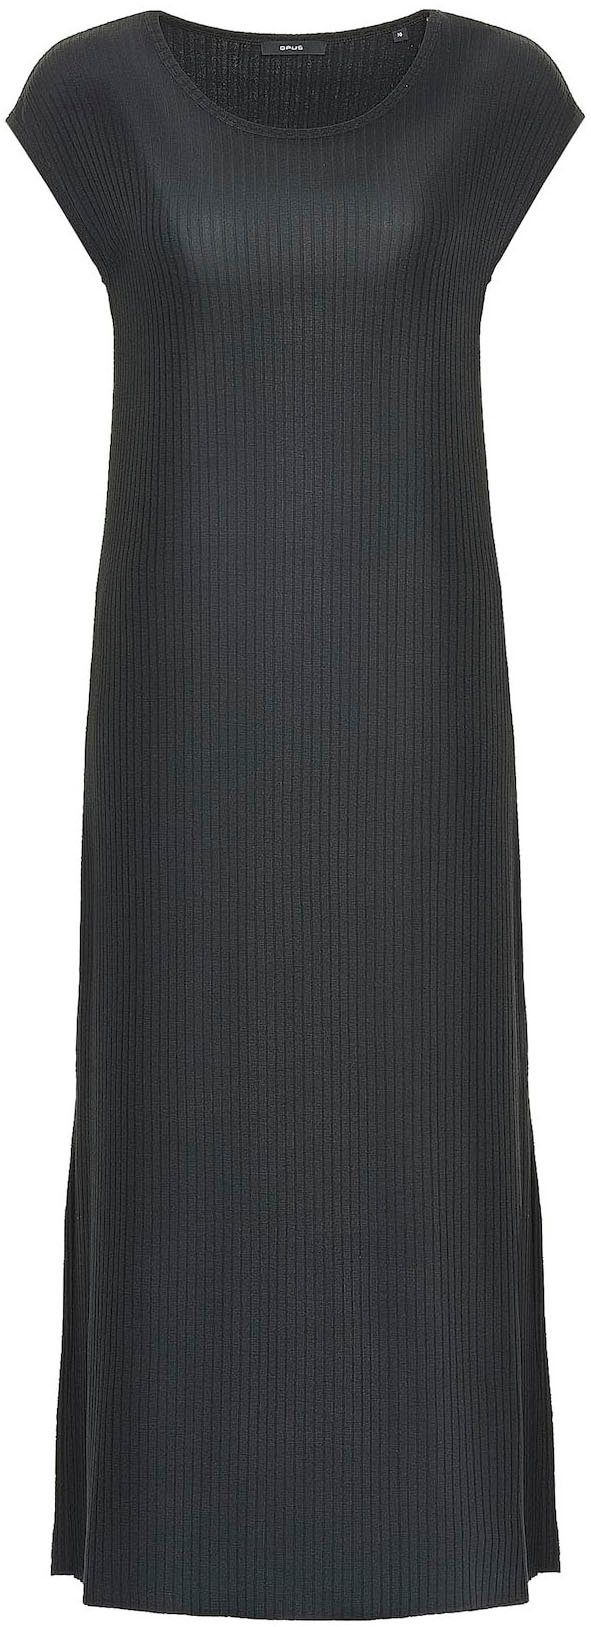 OPUS Jerseykleid Winston mit strukturiertem black Griff